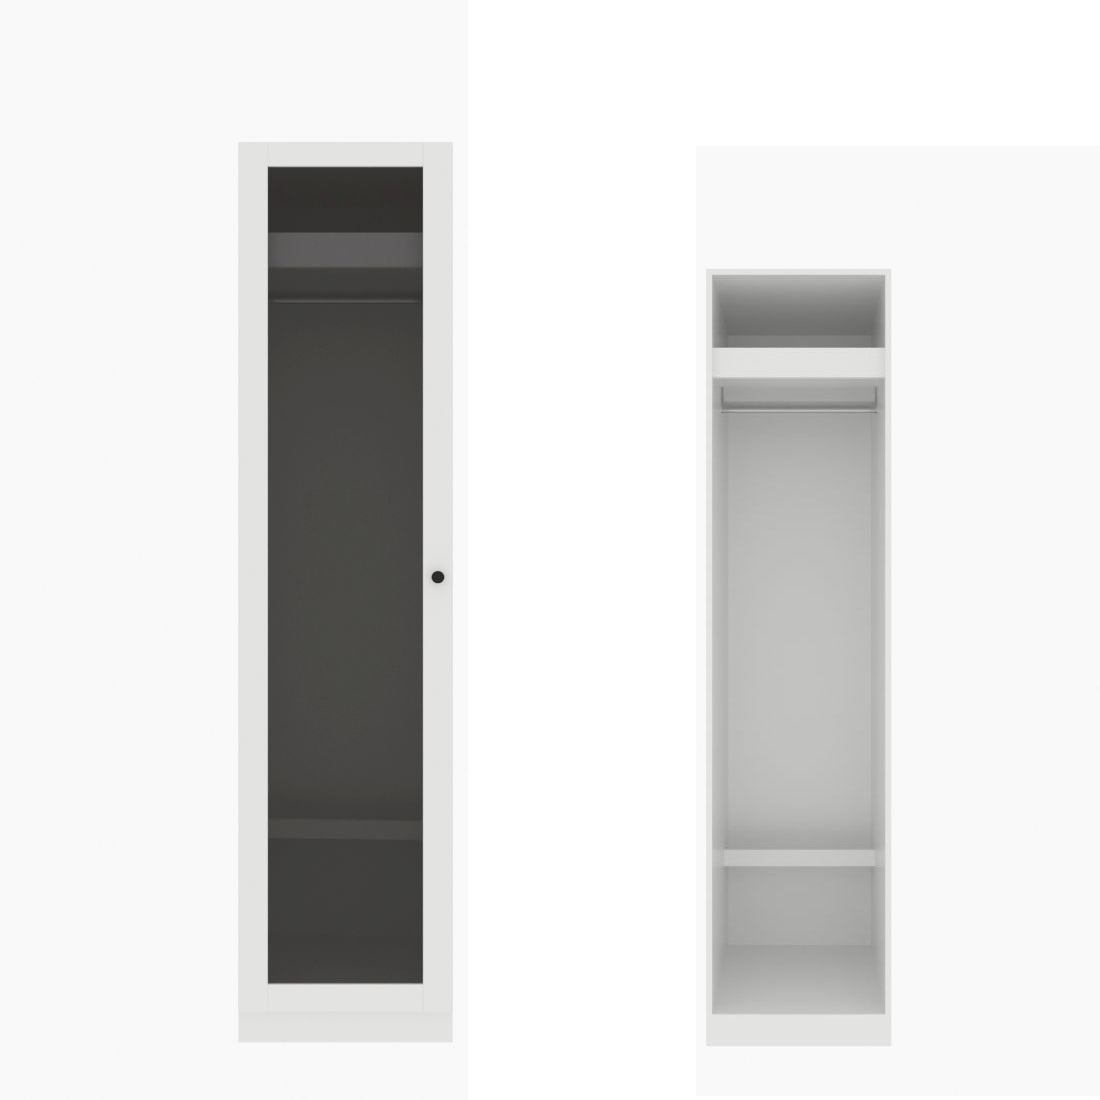 ตู้เสื้อผ้า ราวแขวนโล่ง OP-J (หน้าบานเปิดซ้าย) ขนาด 50 ซม. รุ่น Blox สีขาว&กระจกชาดำ01